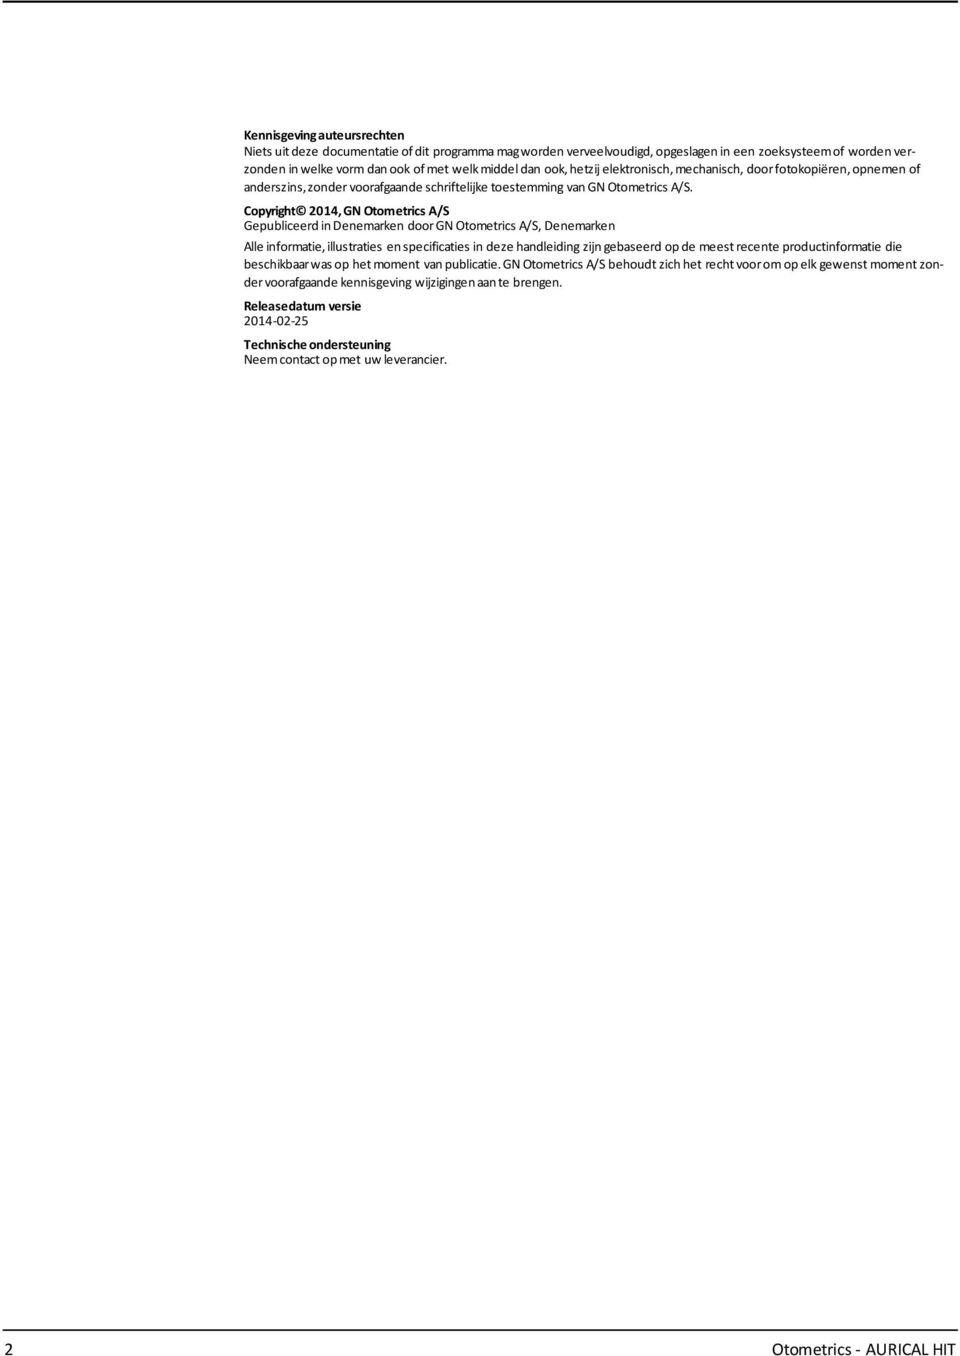 Copyright 2014, GN Otometrics A/S Gepubliceerd indenemarken doorgn Otometrics A/S, Denemarken Alle informatie,illustraties enspecificaties in deze handleiding zijn gebaseerd opde meest recente